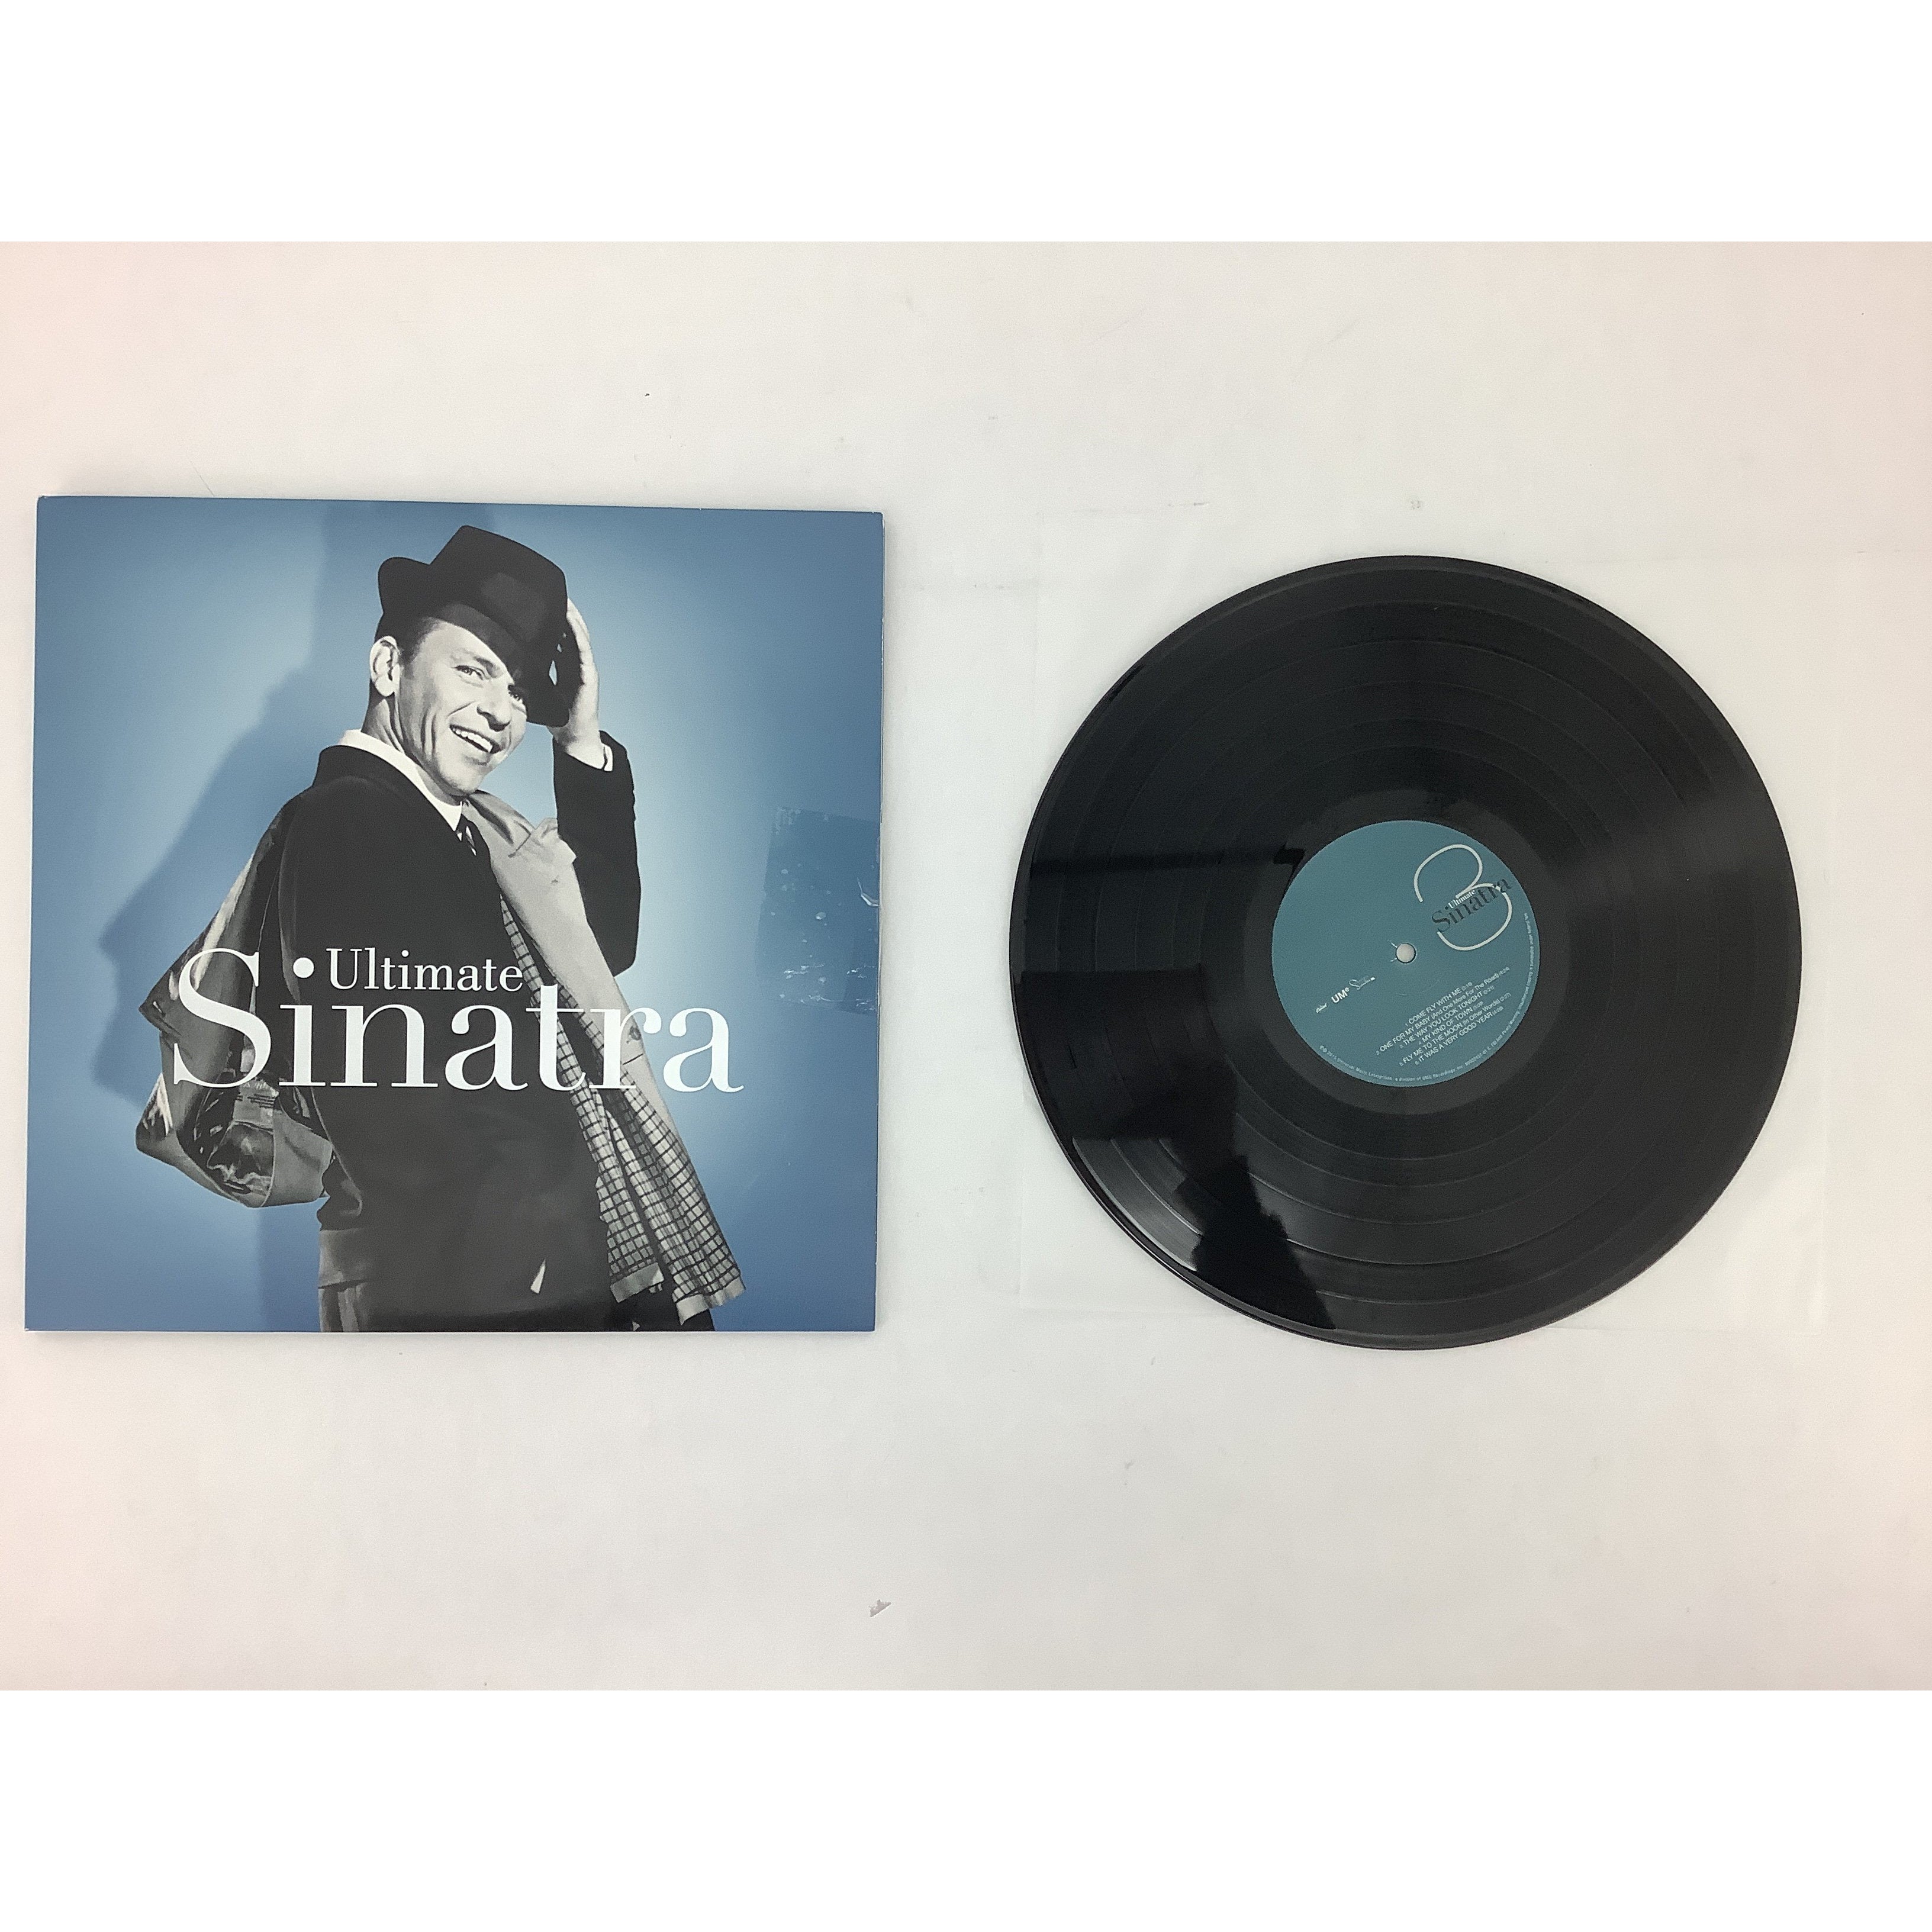 Ultimate Sinatra by Frank Sinatra Vinyl Record: Double Album: Traditional Pop **DEALS**